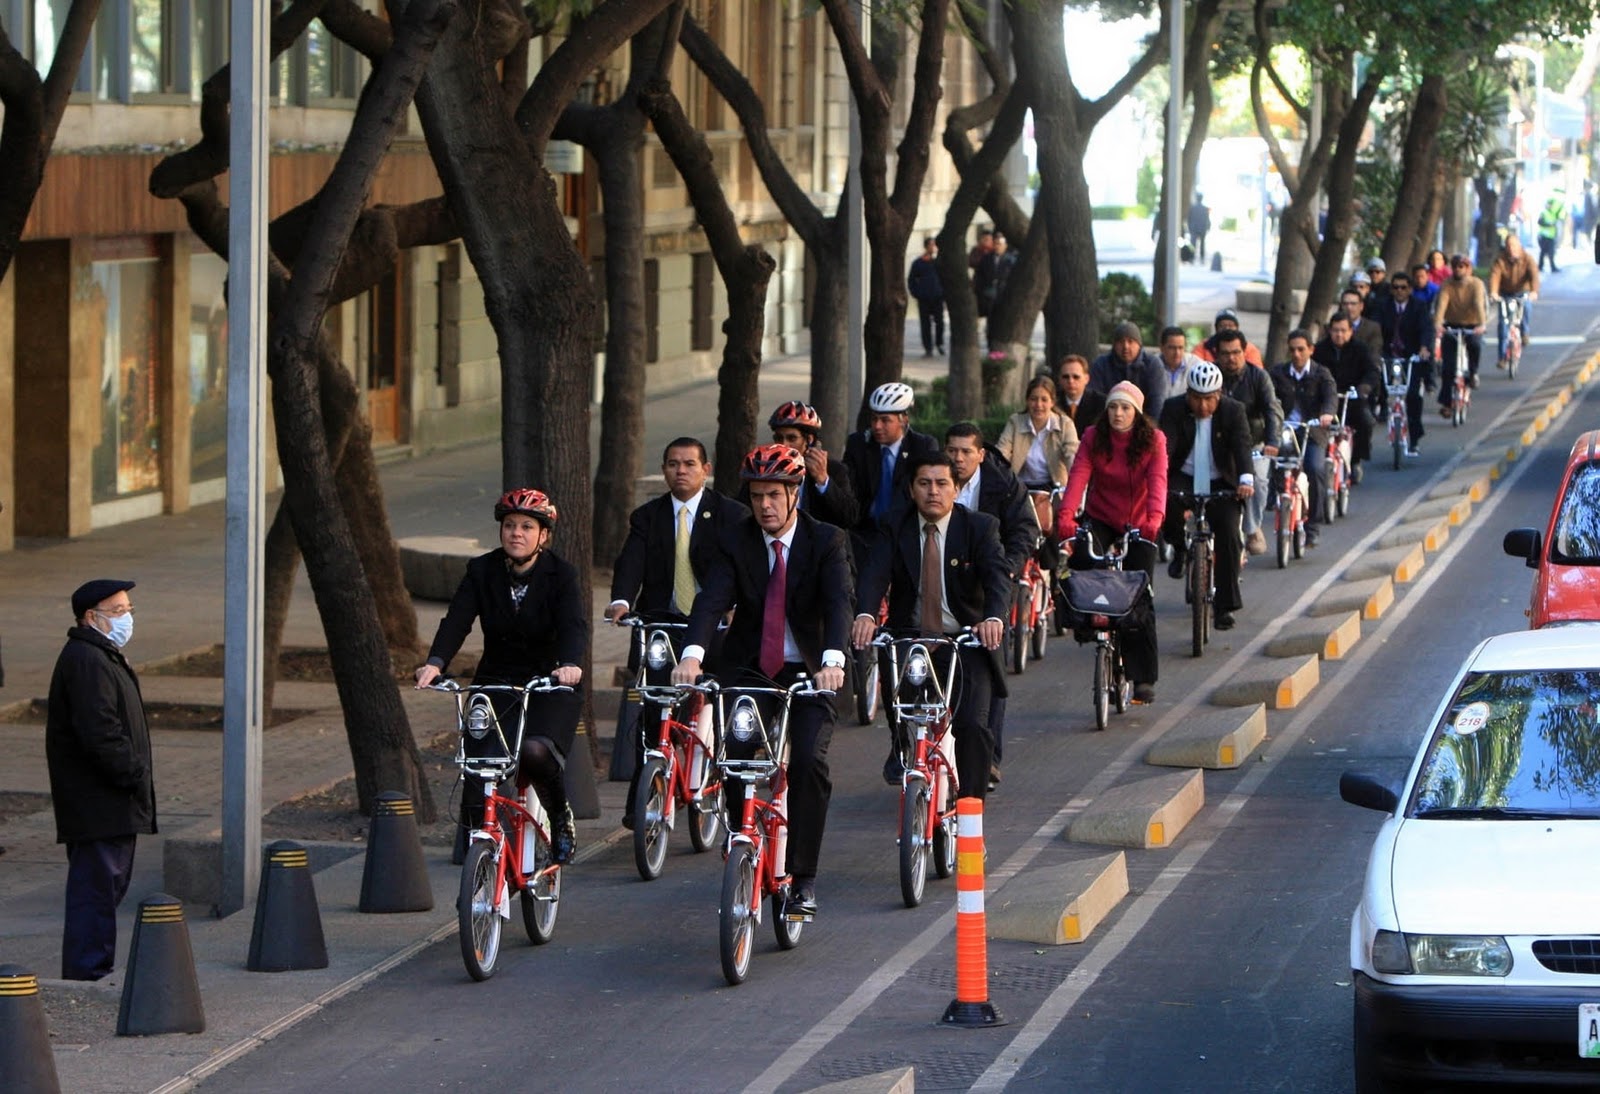  Con mejor movilidad, México podría ser la quinta potencia en economía